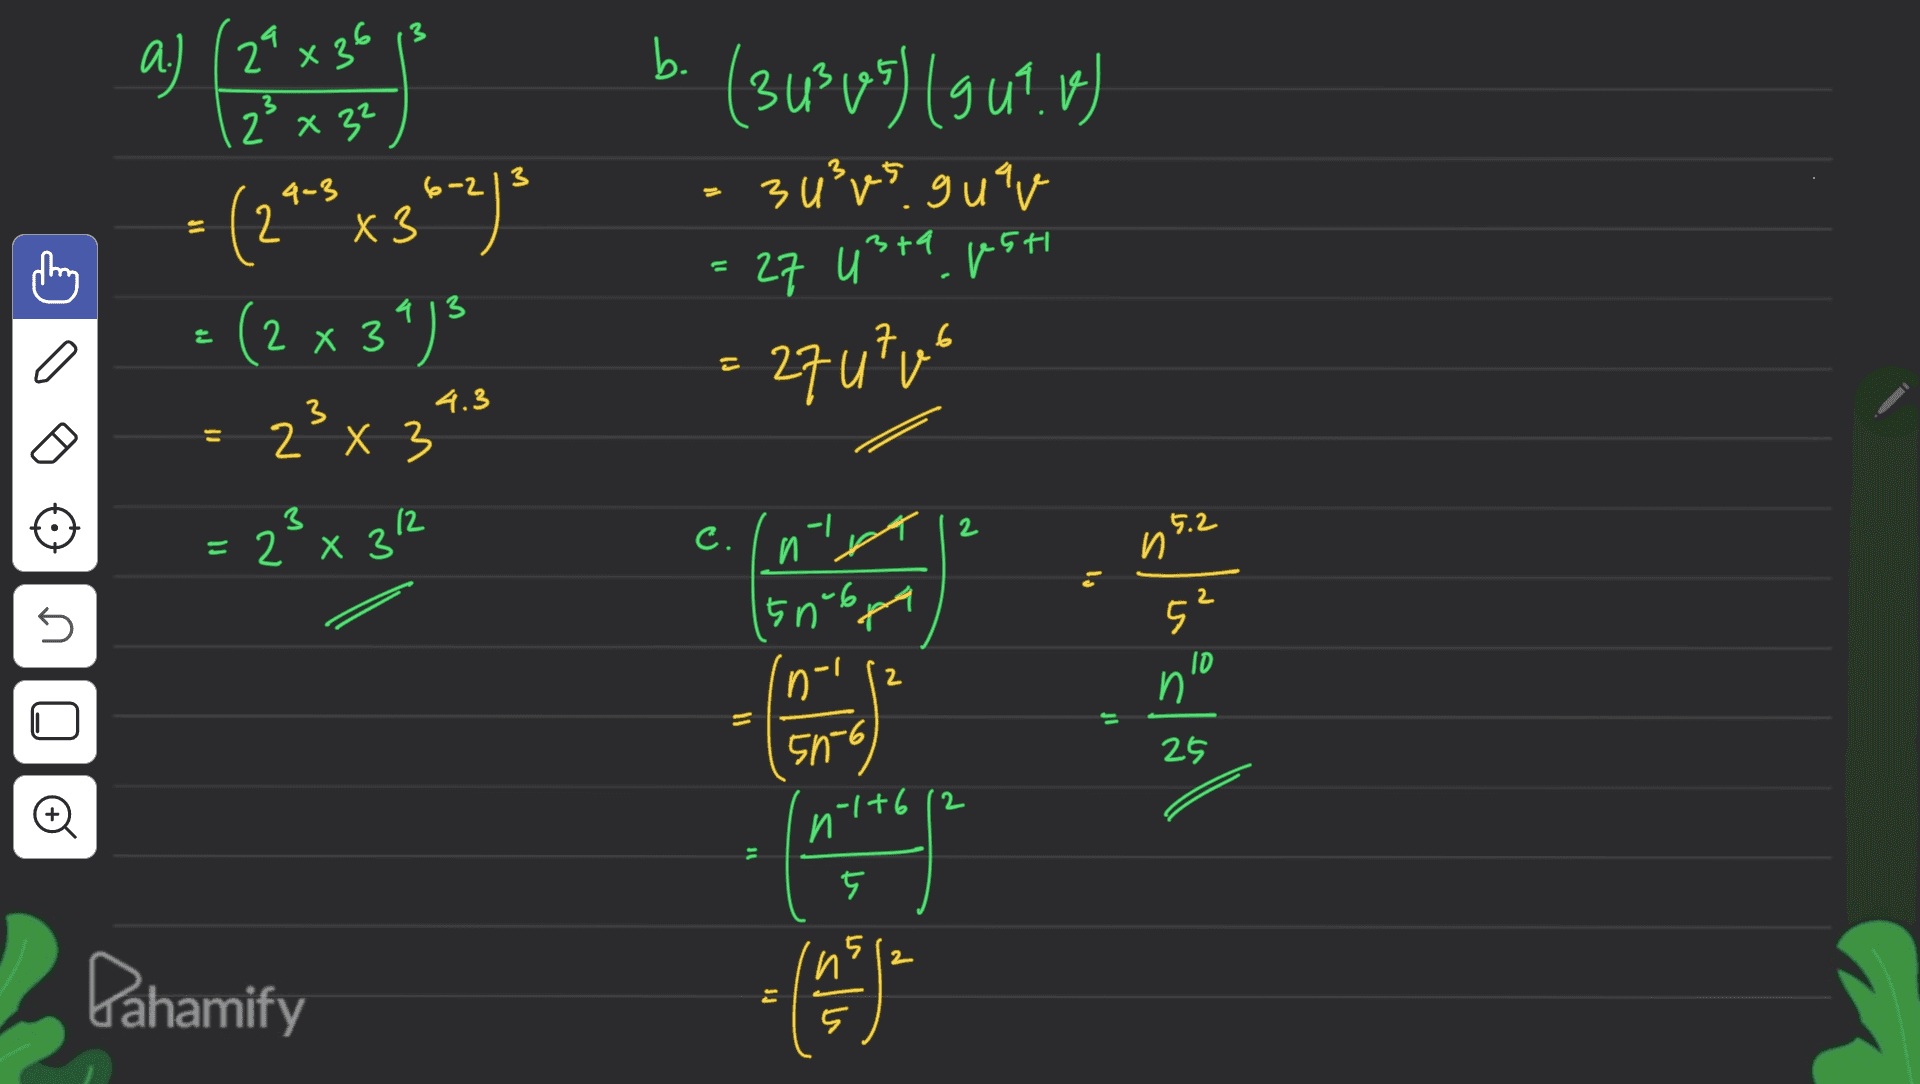 a) (24 x 36 a. b. 2x 3 2² x 32 (343 165) (gu?. f) 3 u²es guar 3 9-3 х 3 9 13 학 - (2*-x3602). = (2 x 3") • 2x3" 23 x 312 2х3 = 27 usta psti 27utut 7.6 4.3 2 C. X - И 2 5.2 И. 2 n 5 50-6 Ini 5 10 n 2 = 25 50-6 n1+612 Đ 5 2 n Pahamify -CODE = hs 는 5 